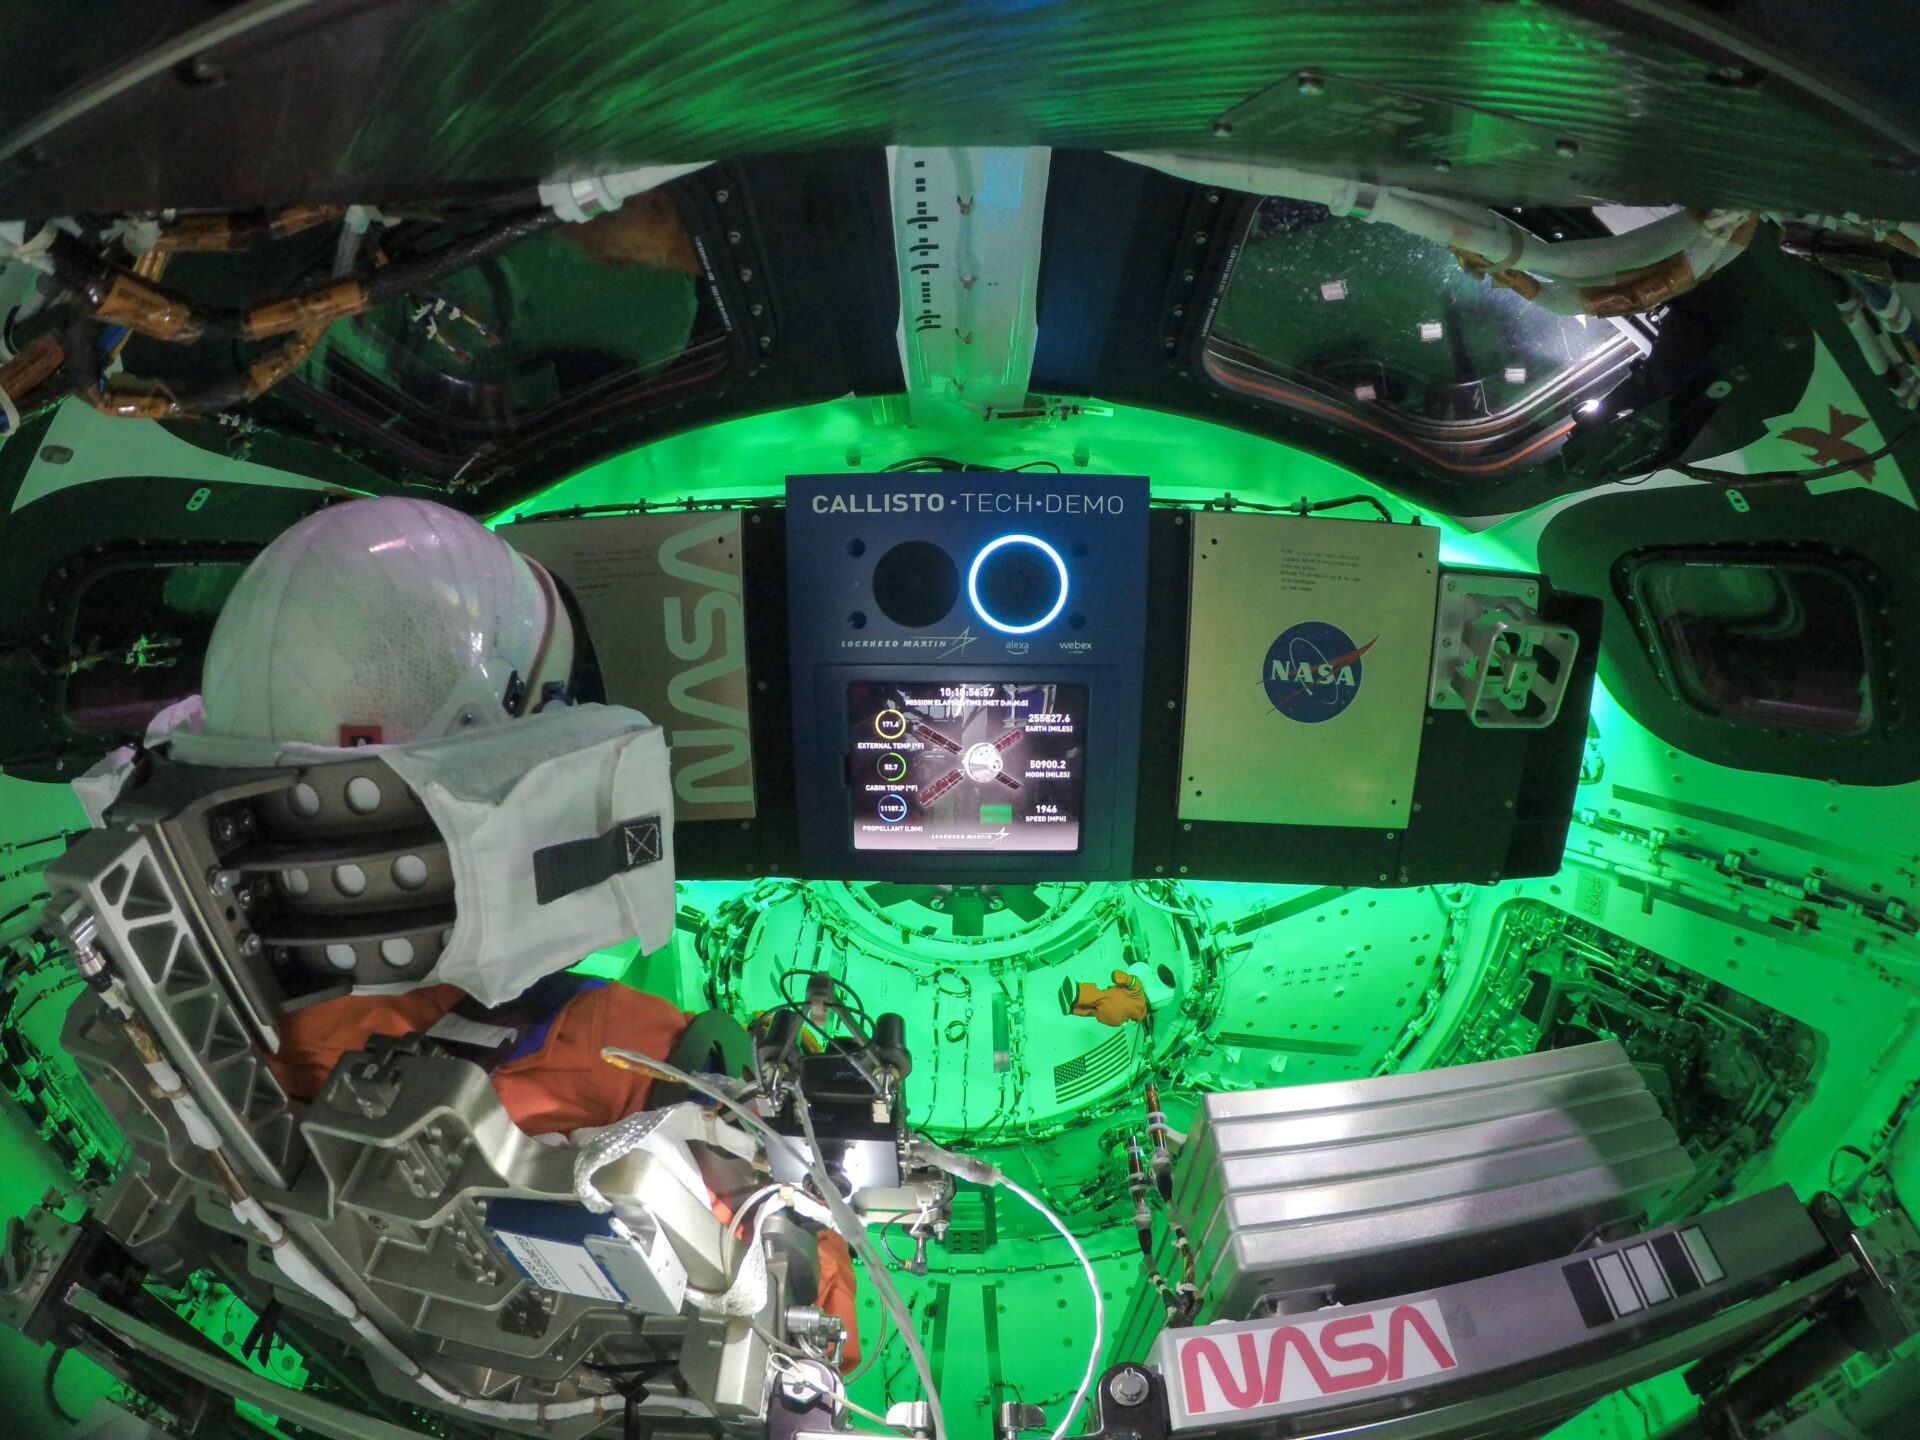 Диско на борту Orion - це демонстрація технології Callisto